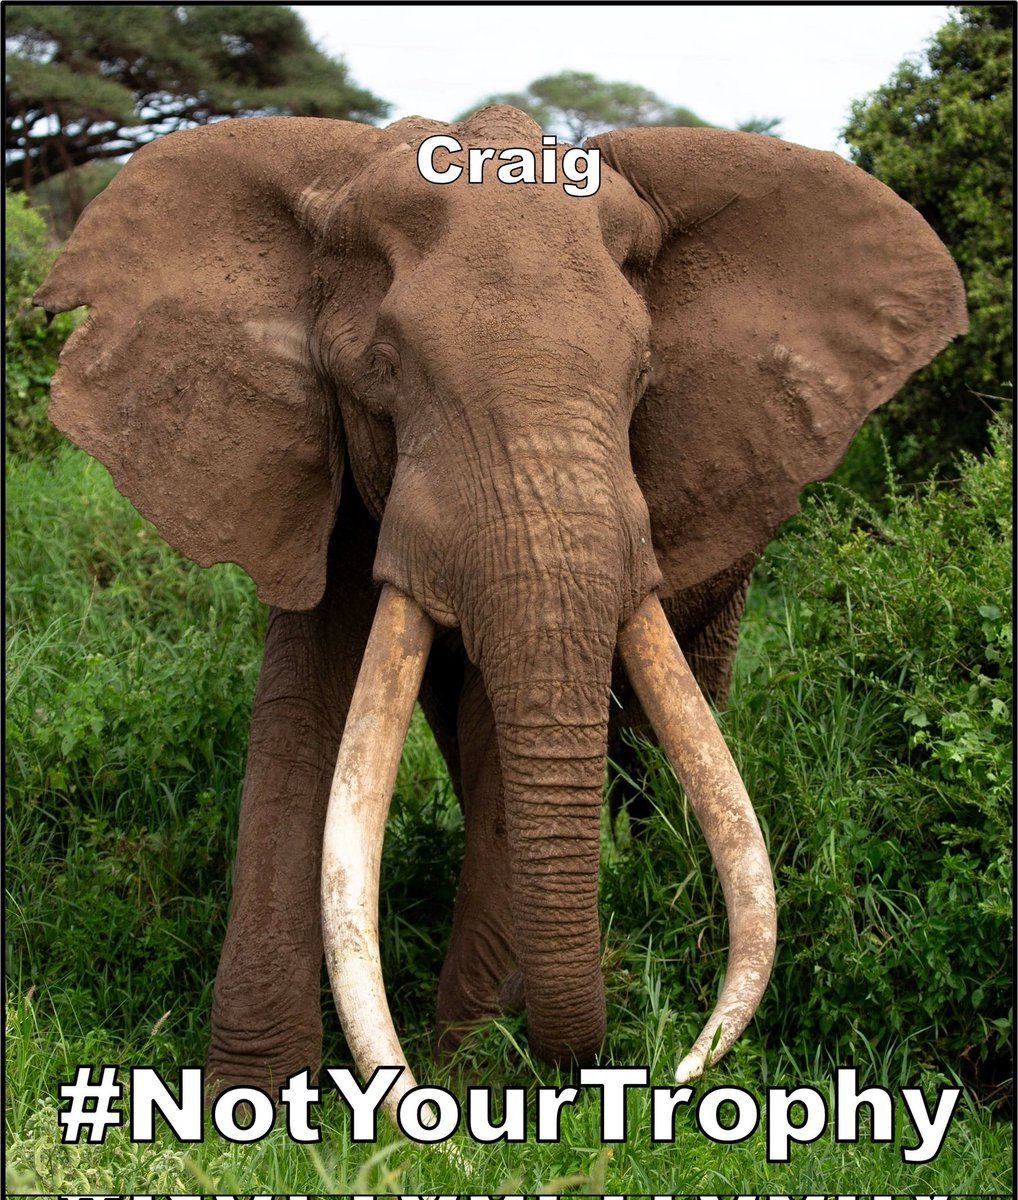 Cada año turistas de todo el mundo viajan para ver a individuos como Craig. Estos elefantes son mucho más valiosos vivos que muertos. #BanTrophyHunting #AmboseliTuskers #NotYourTrophy